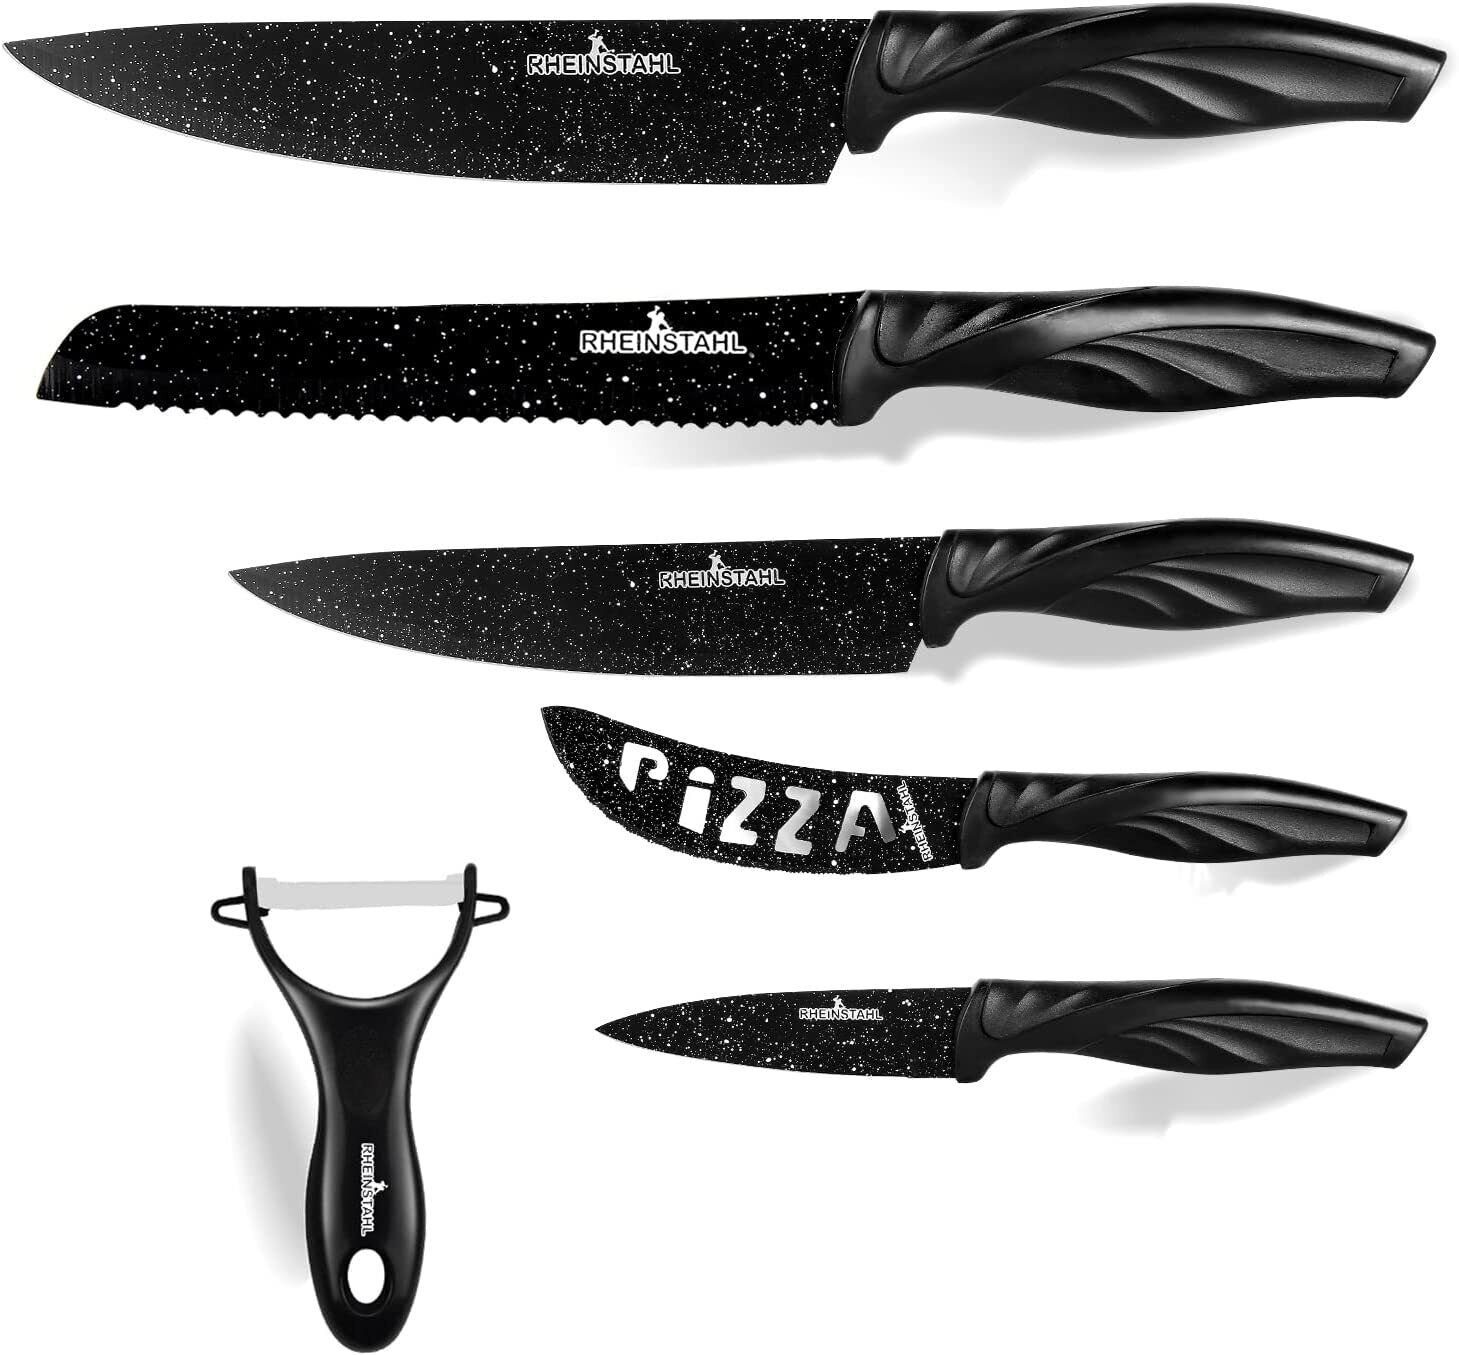 RHEINSTAHL Messer-Set 6-teilig- Edelstahl küchenmesser set mit Geschenkbox, Edelstahl + Antihaft, Profi knife set Messerset inkl. Schäler